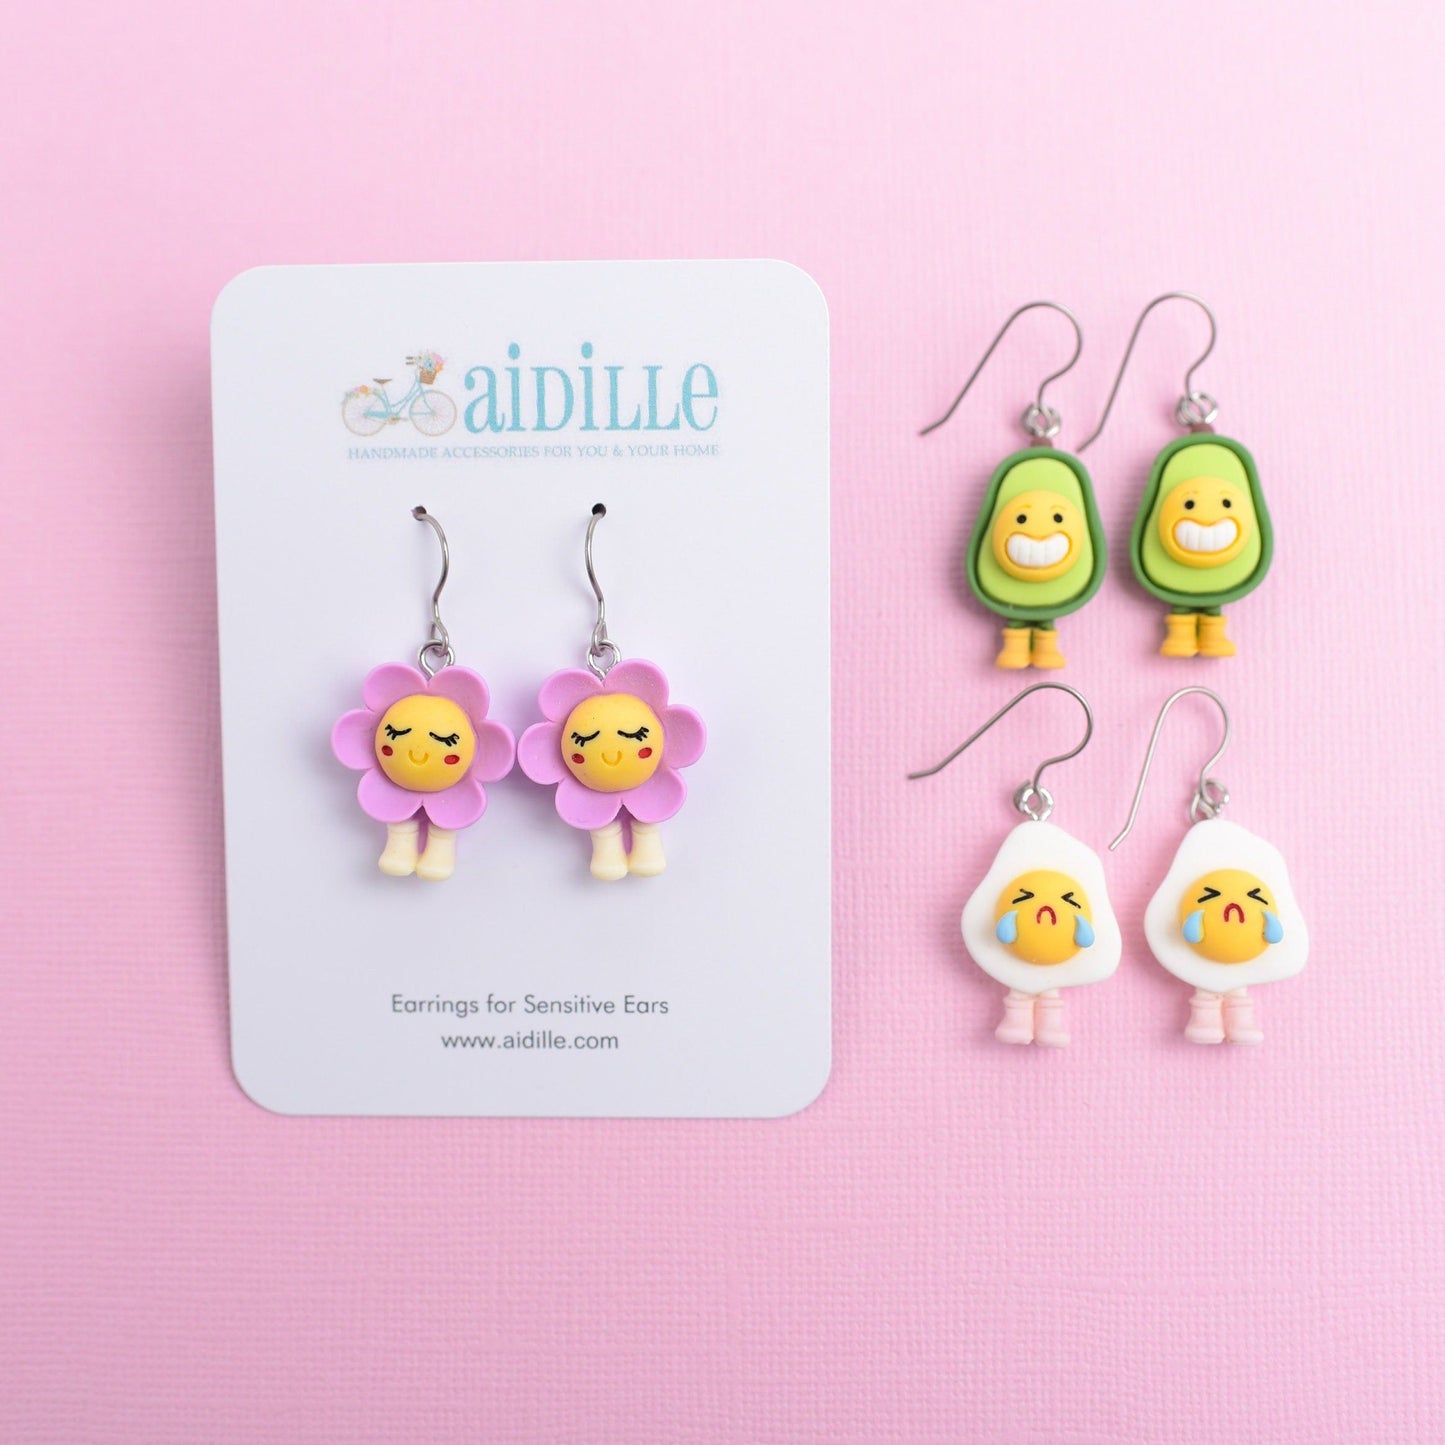 Kawaii Titanium Earrings with Titanium Ear Wires- Choose Egg, Avocado, or Daisy Flower